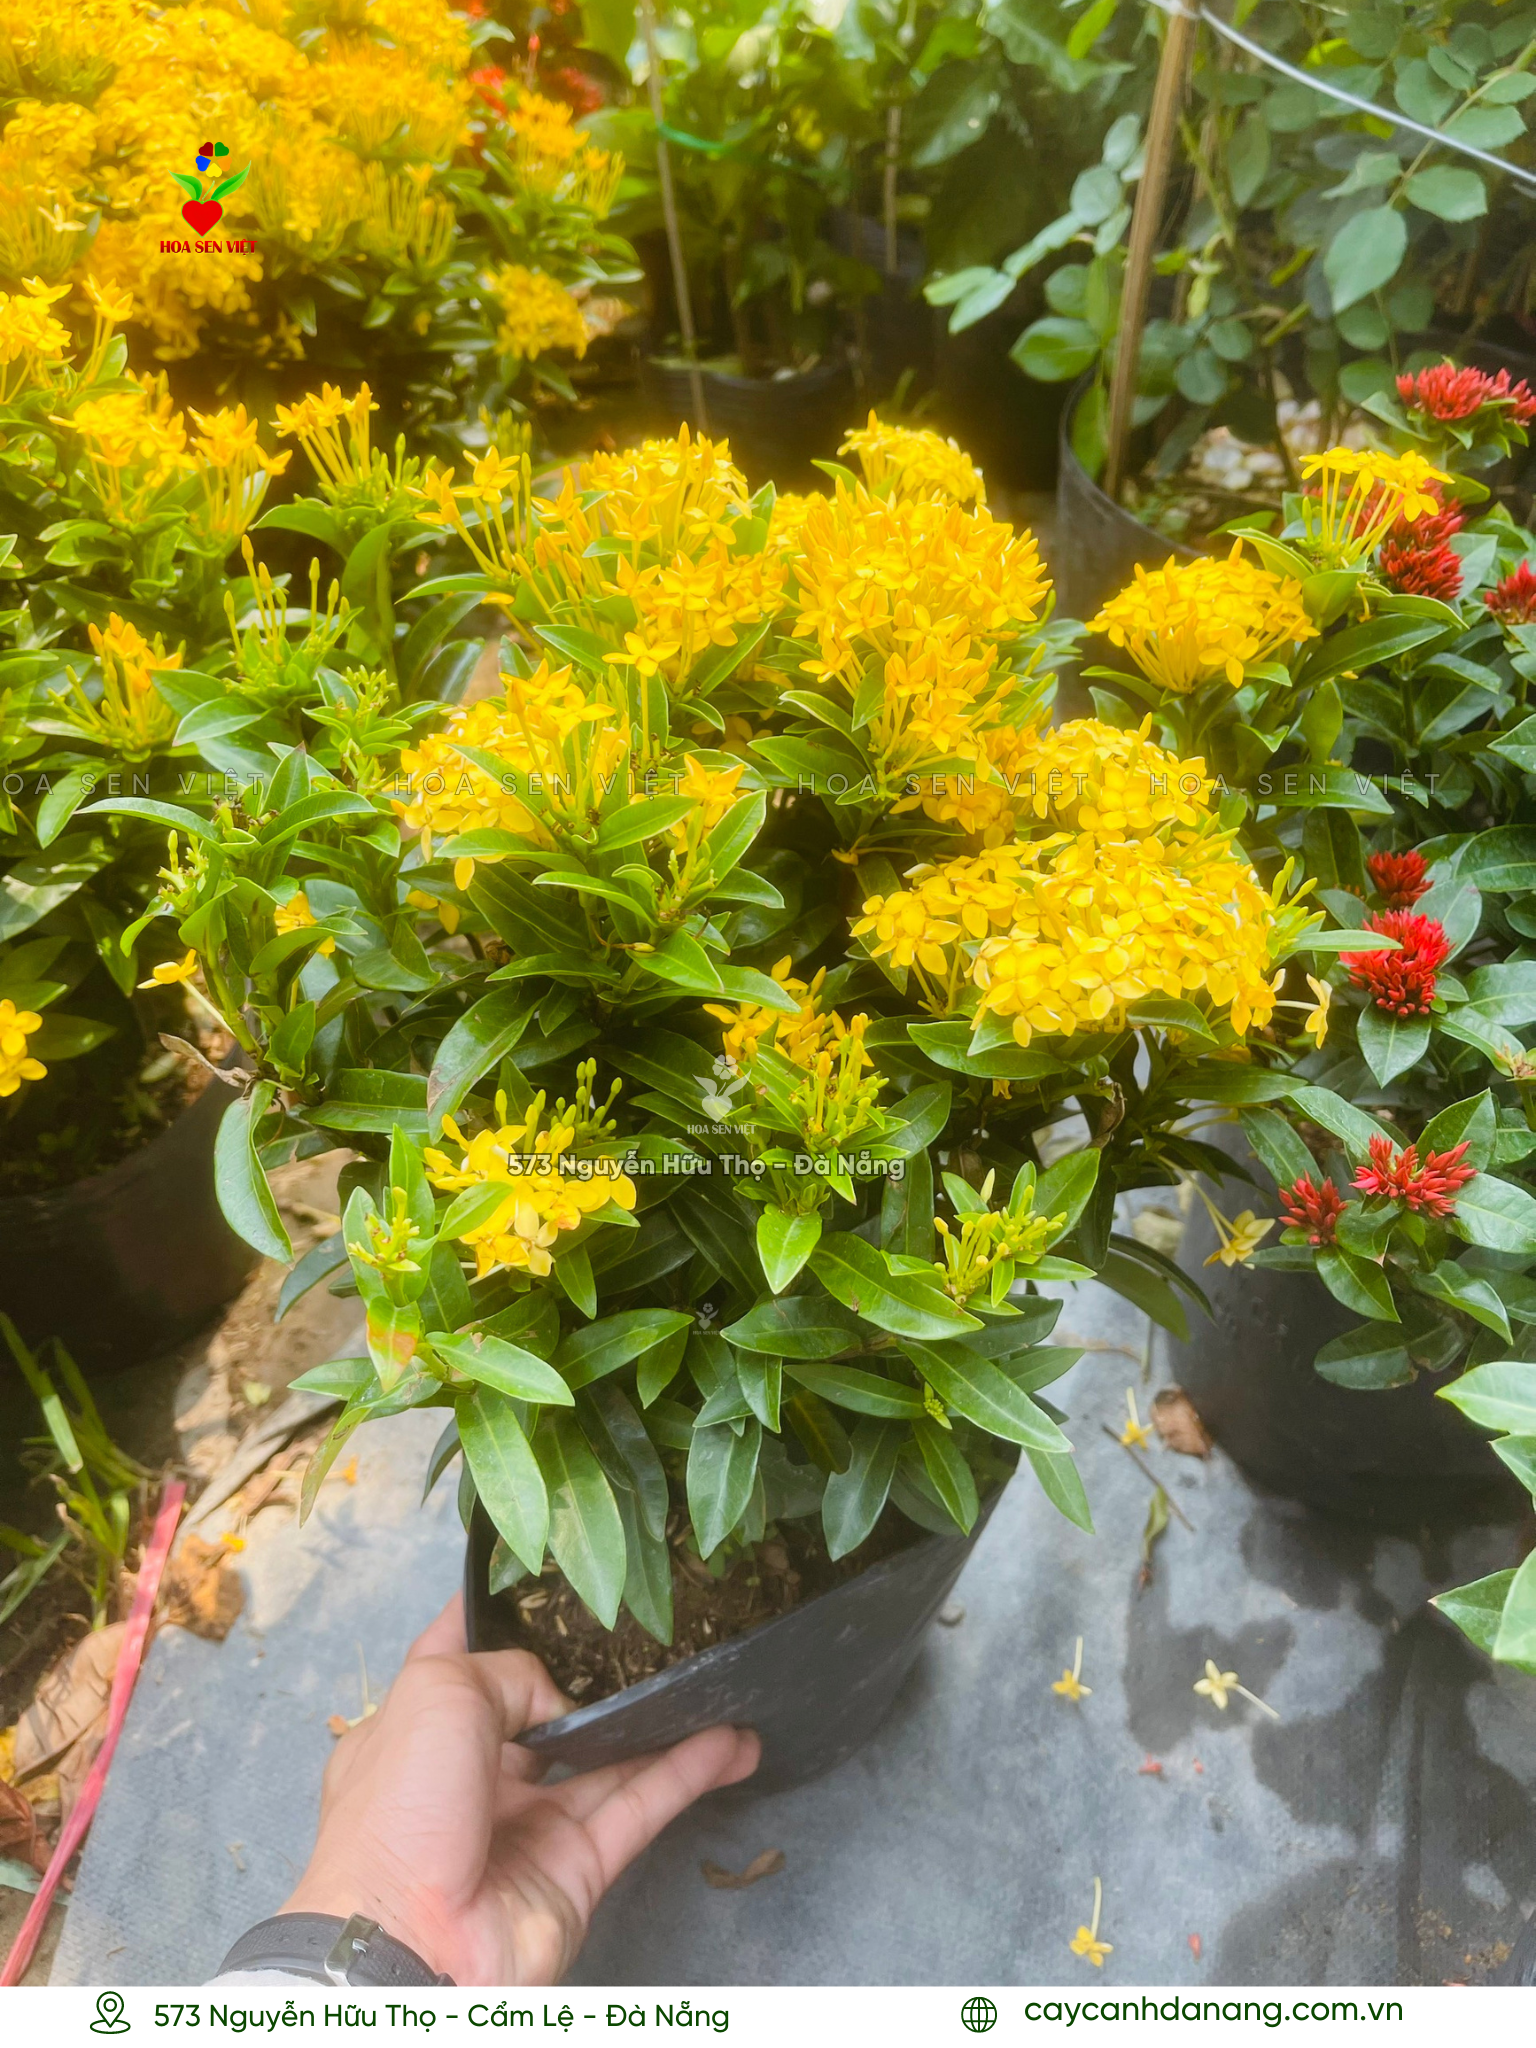 Mua hoa trang nhật tại Đà Nẵng với giá rẻ và cách chăm sóc đơn giản